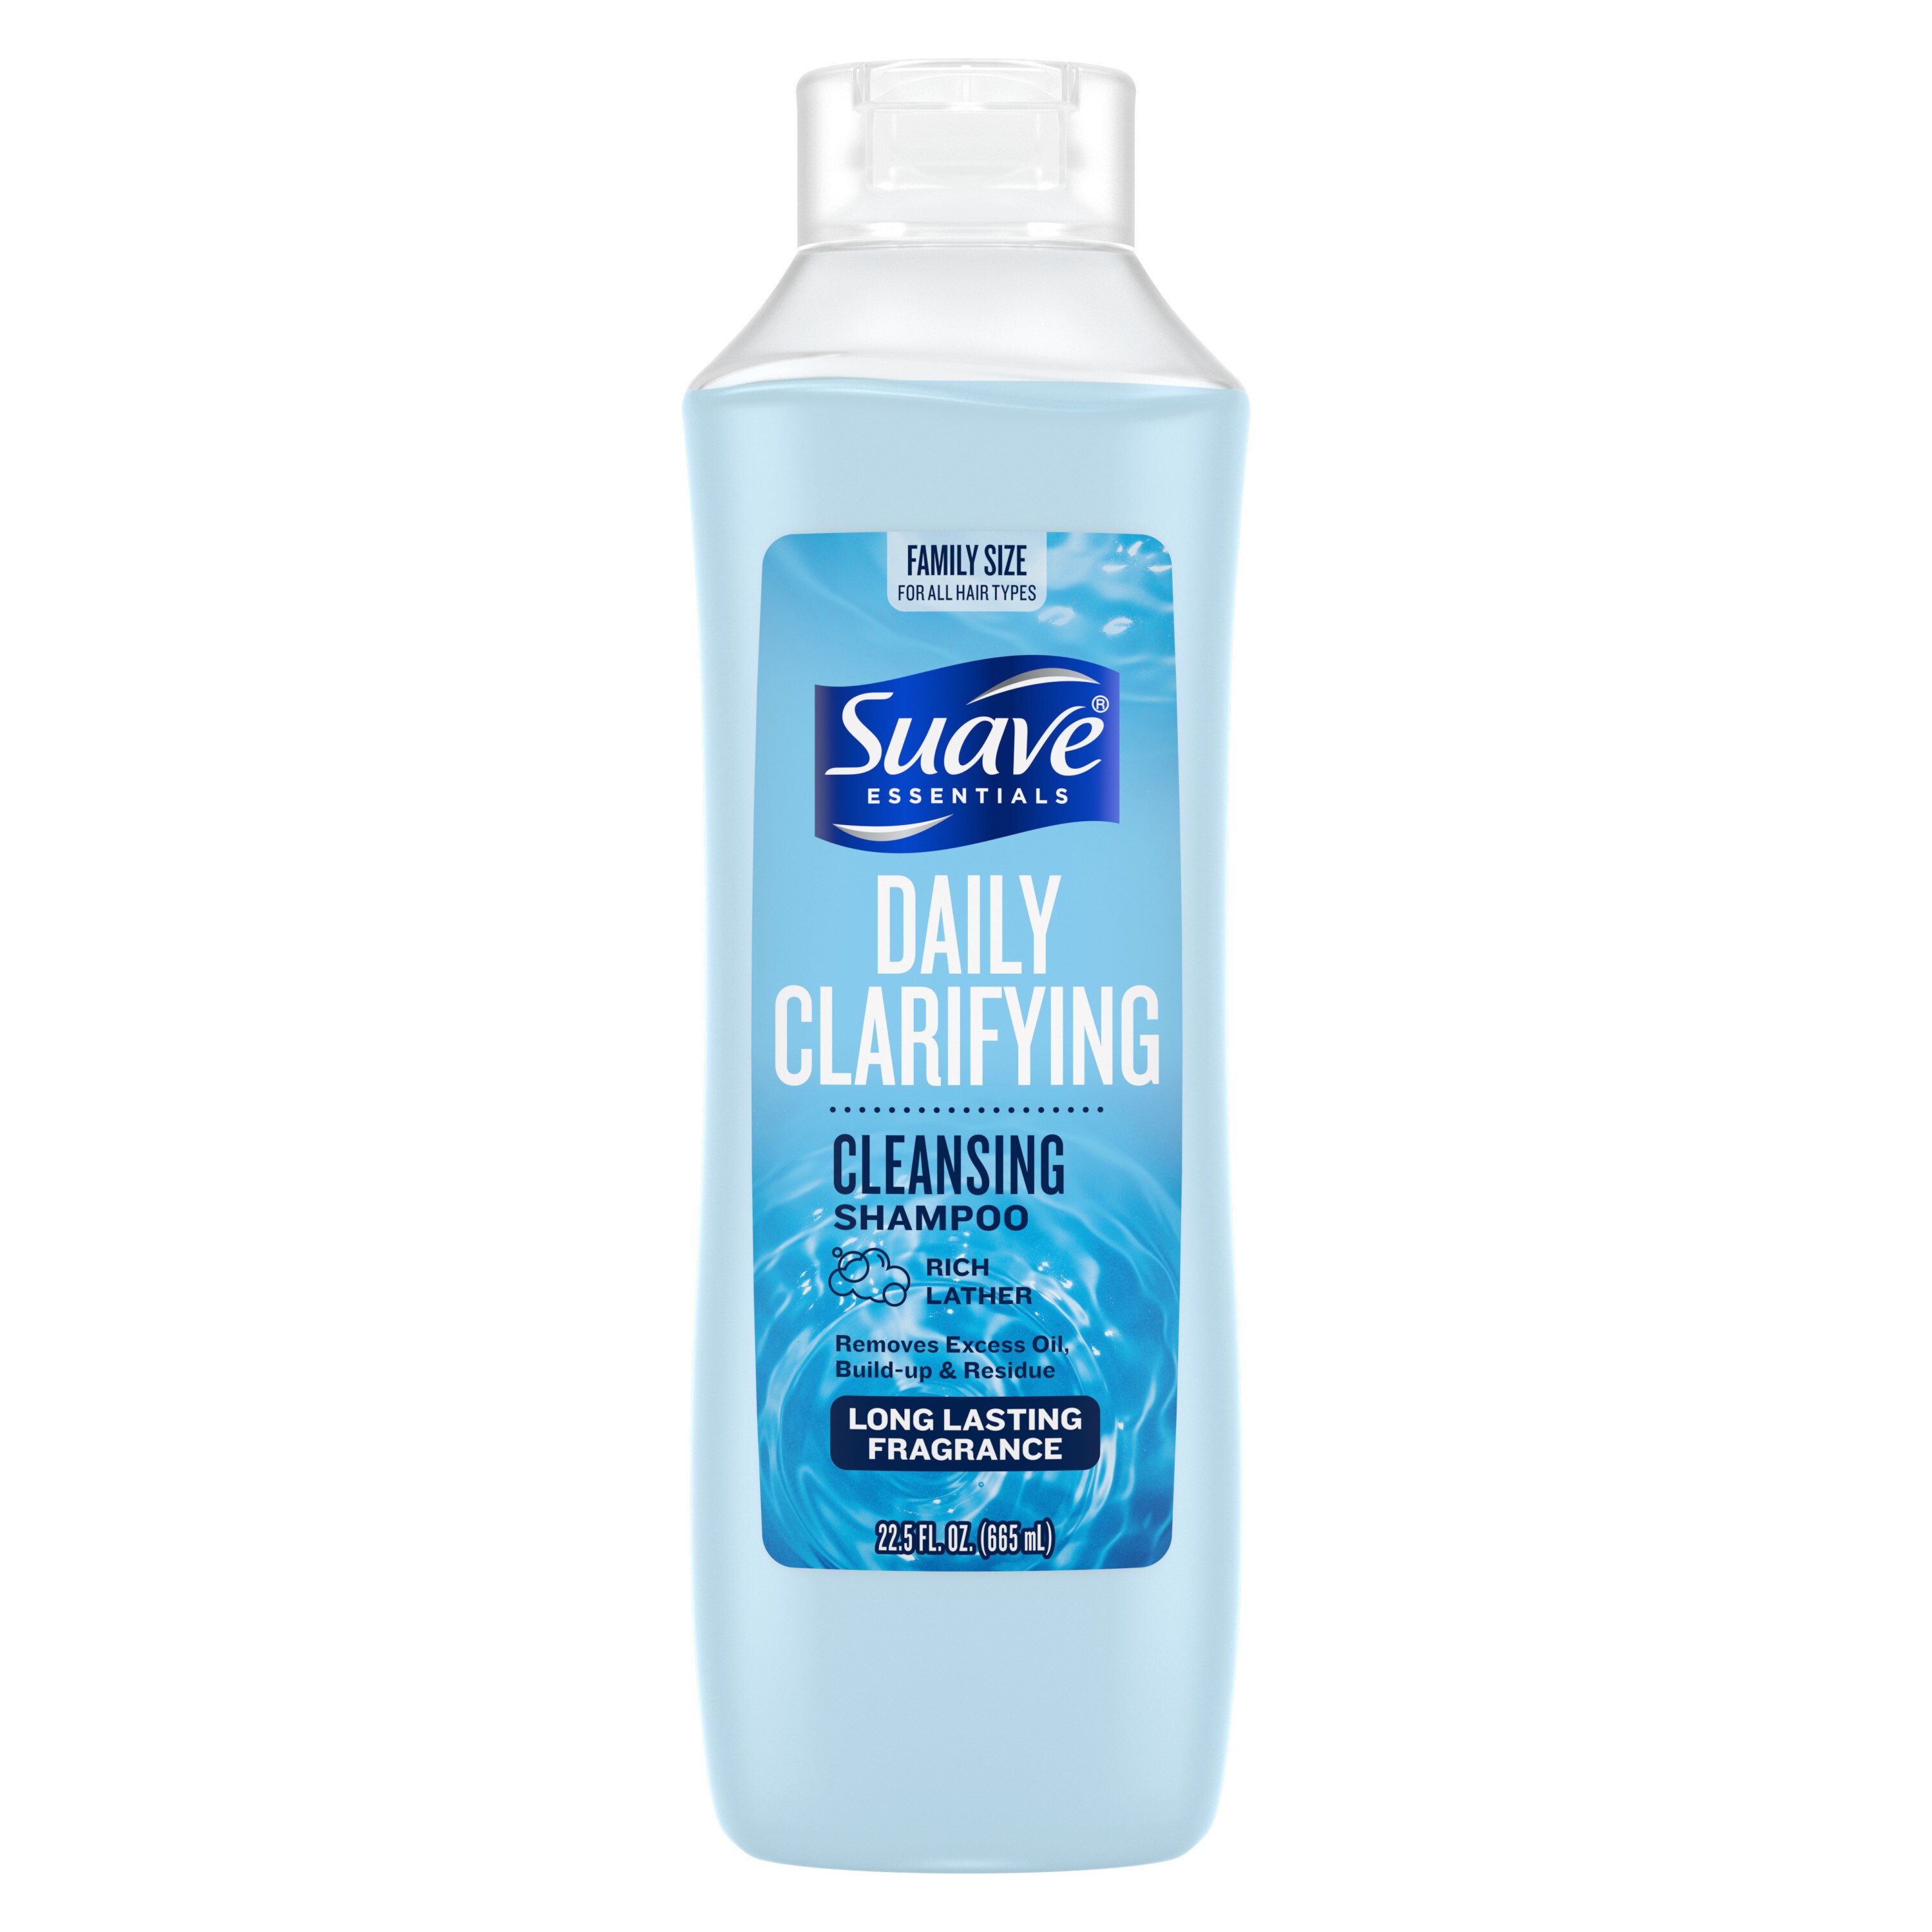 Suave Essentials Daily Clarifying Shampoo, 22.5 oz